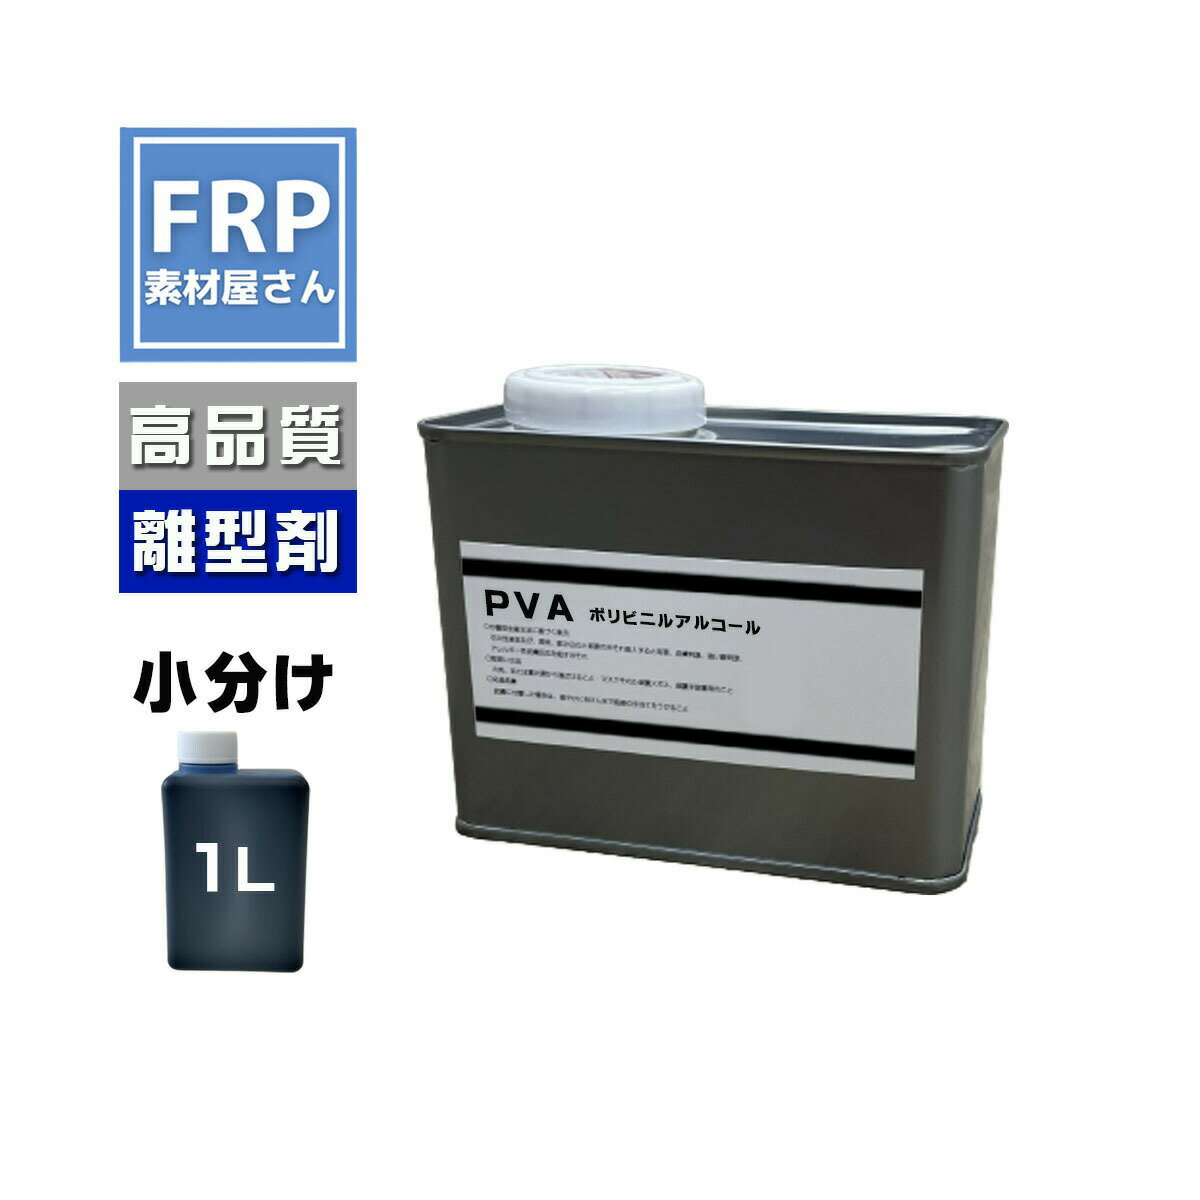 FRP 液体離型剤【 PVA (1L)】ブルー 青/FRP樹脂 剥離剤 型取り 液体タイプ ポリビニルアルコール系